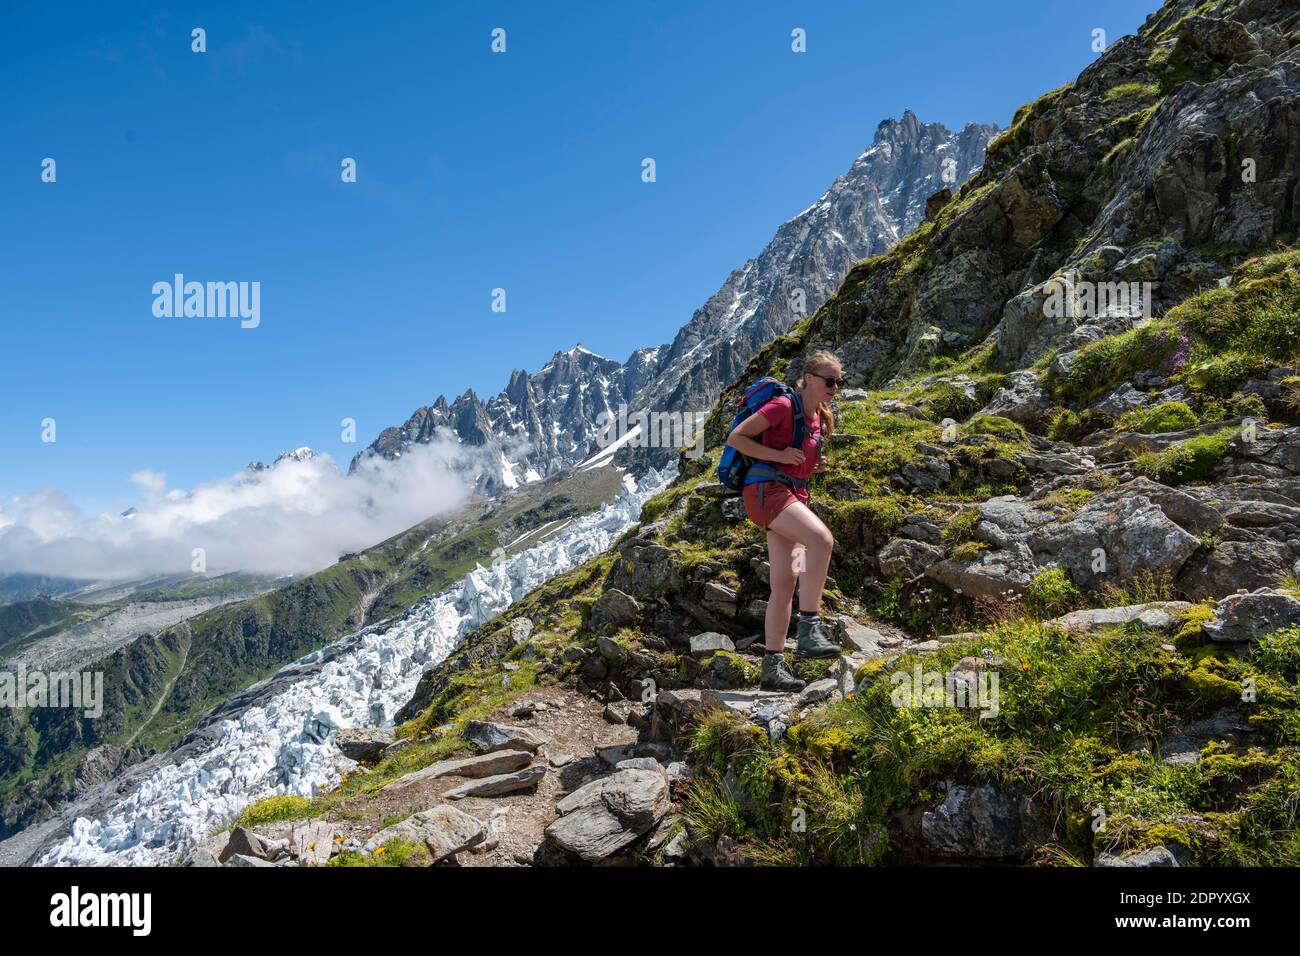 Escursionista su sentiero escursionistico, sentiero escursionistico la Jonction, ghiacciaio Glacier des Bossons, cima di Aiguille du Midi, Chamonix, alta Savoia, Francia Foto Stock